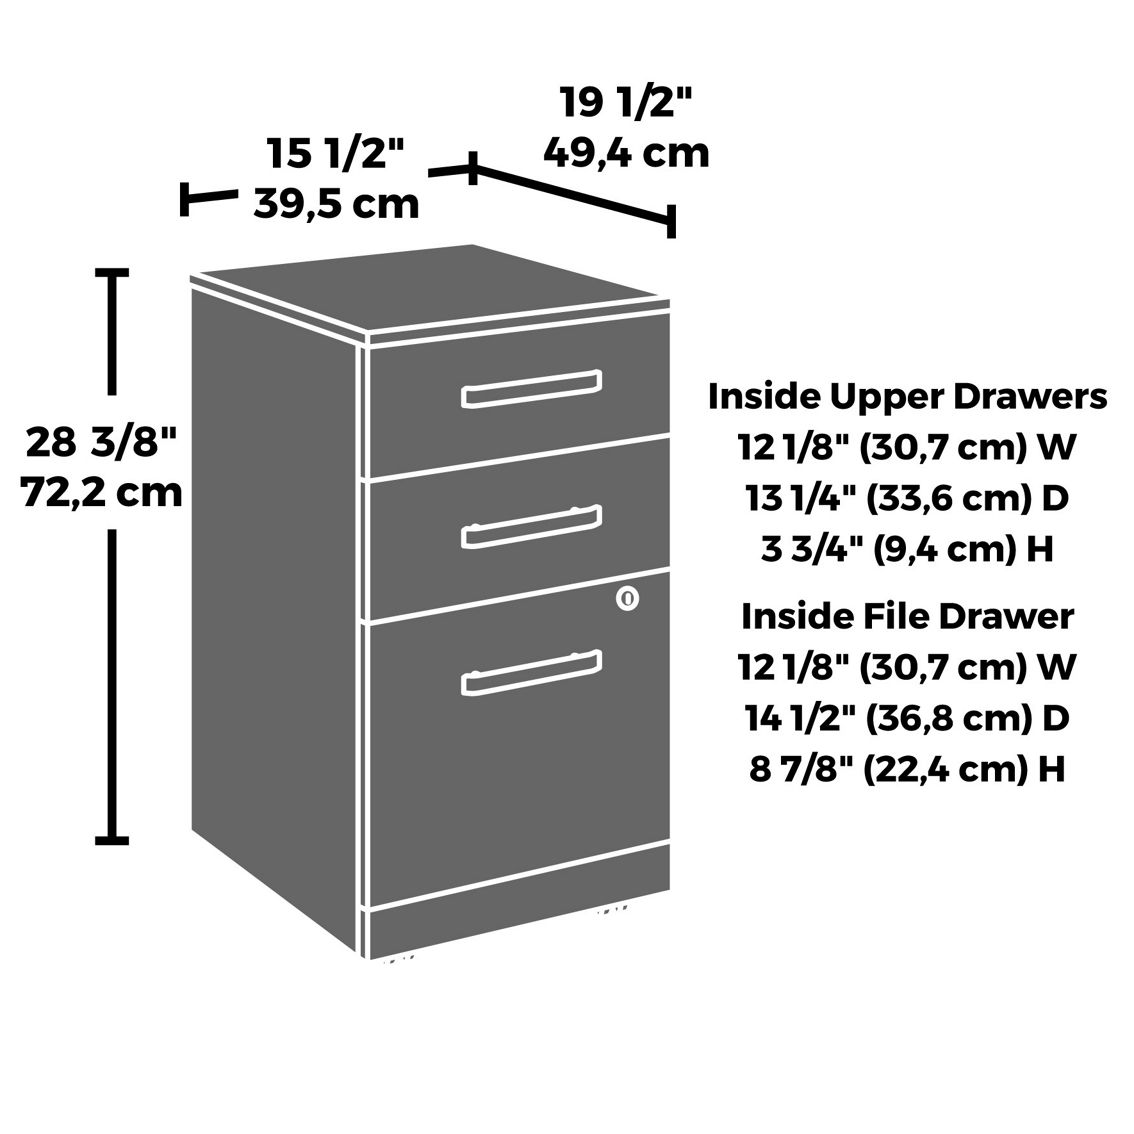 Sauder Commercial 3-Drawer Pedestal File Cabinet - Image 2 of 2